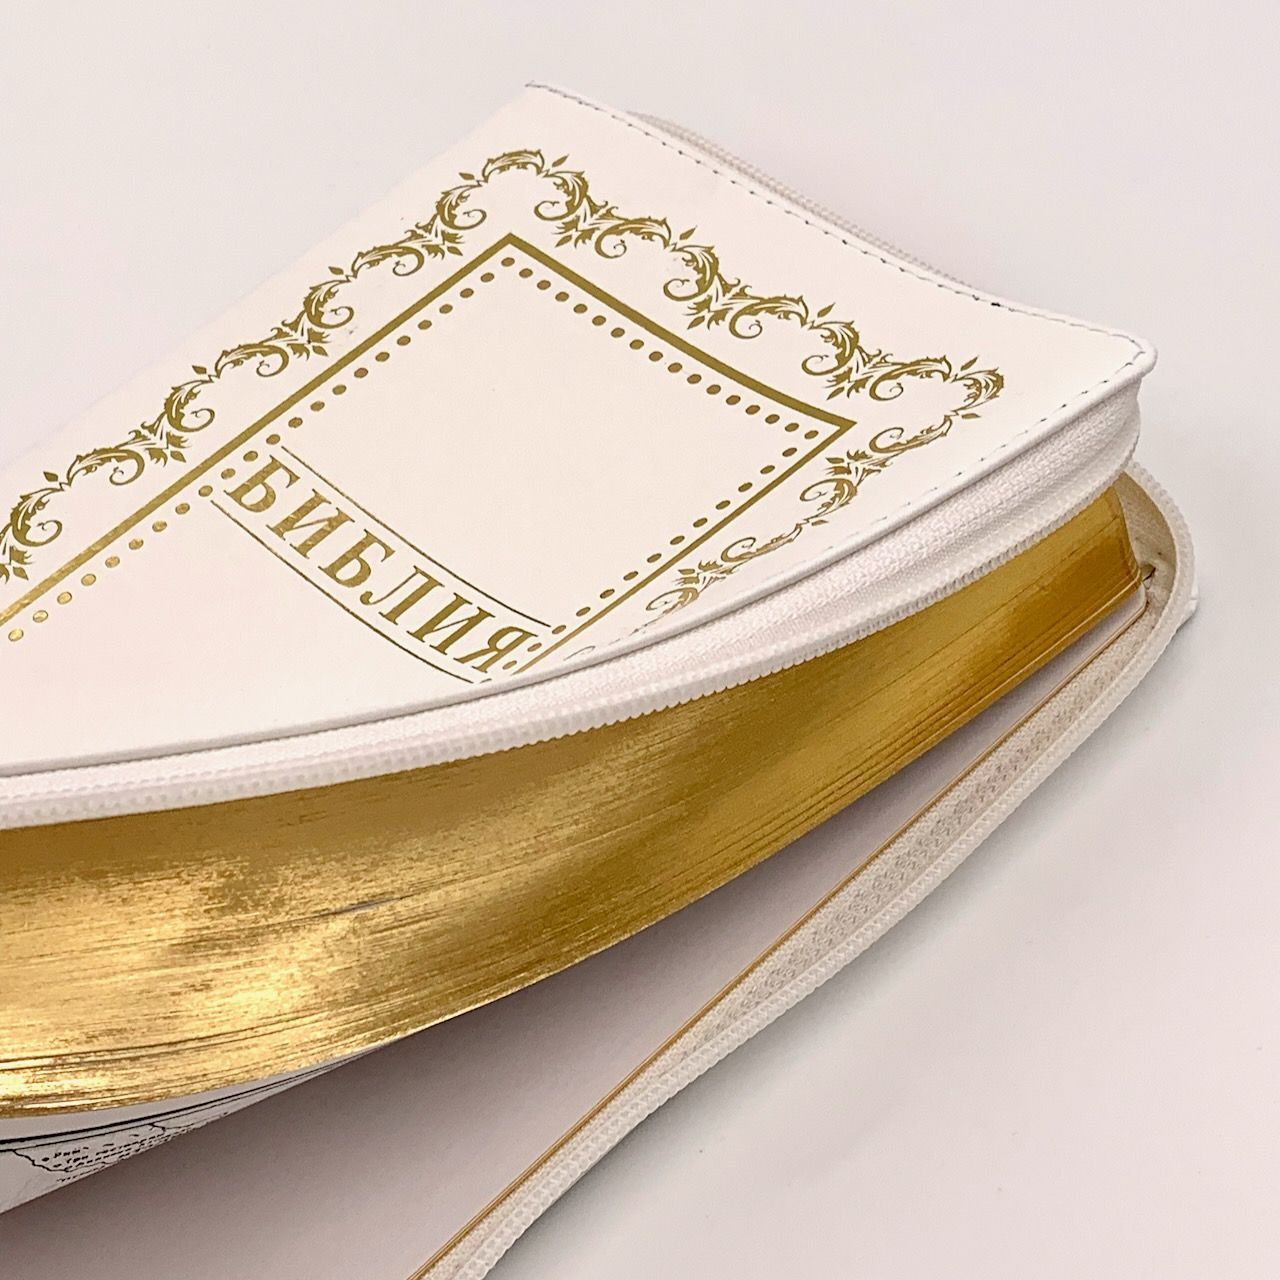 Библия 055z код B4 дизайн "золотая рамка с орнаментом" кожаный переплет на молнии, цвет белый, средний формат, 143*220 мм, параллельные места по центру страницы, белые страницы, золотой обрез, крупный шриф